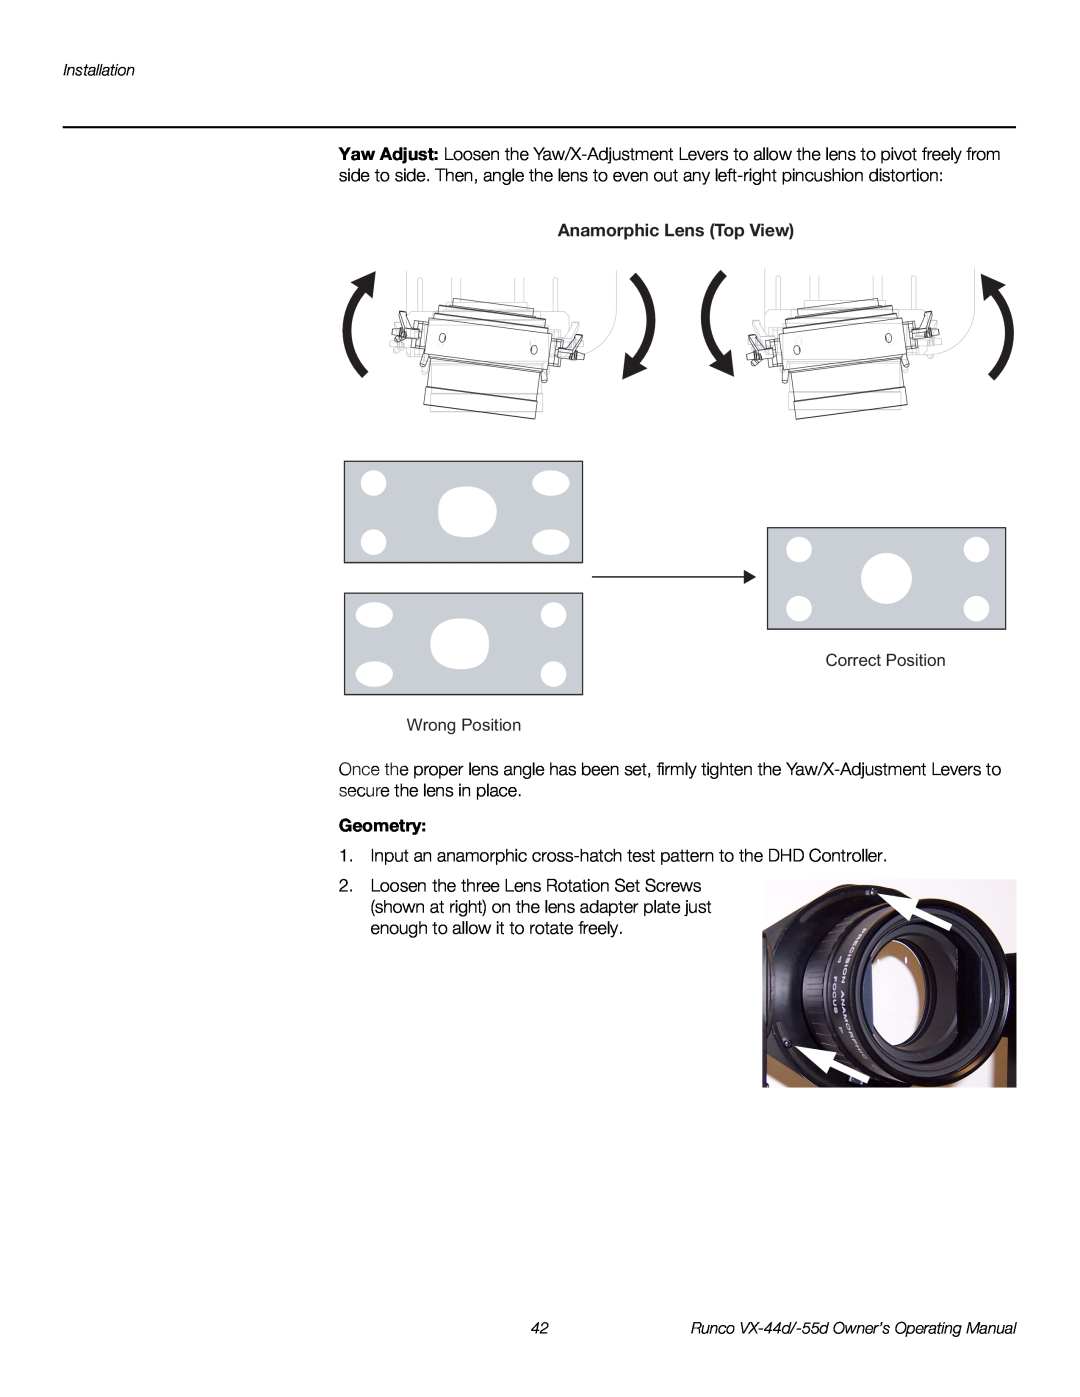 Runco 1080p manual Anamorphic Lens Top View, Geometry 